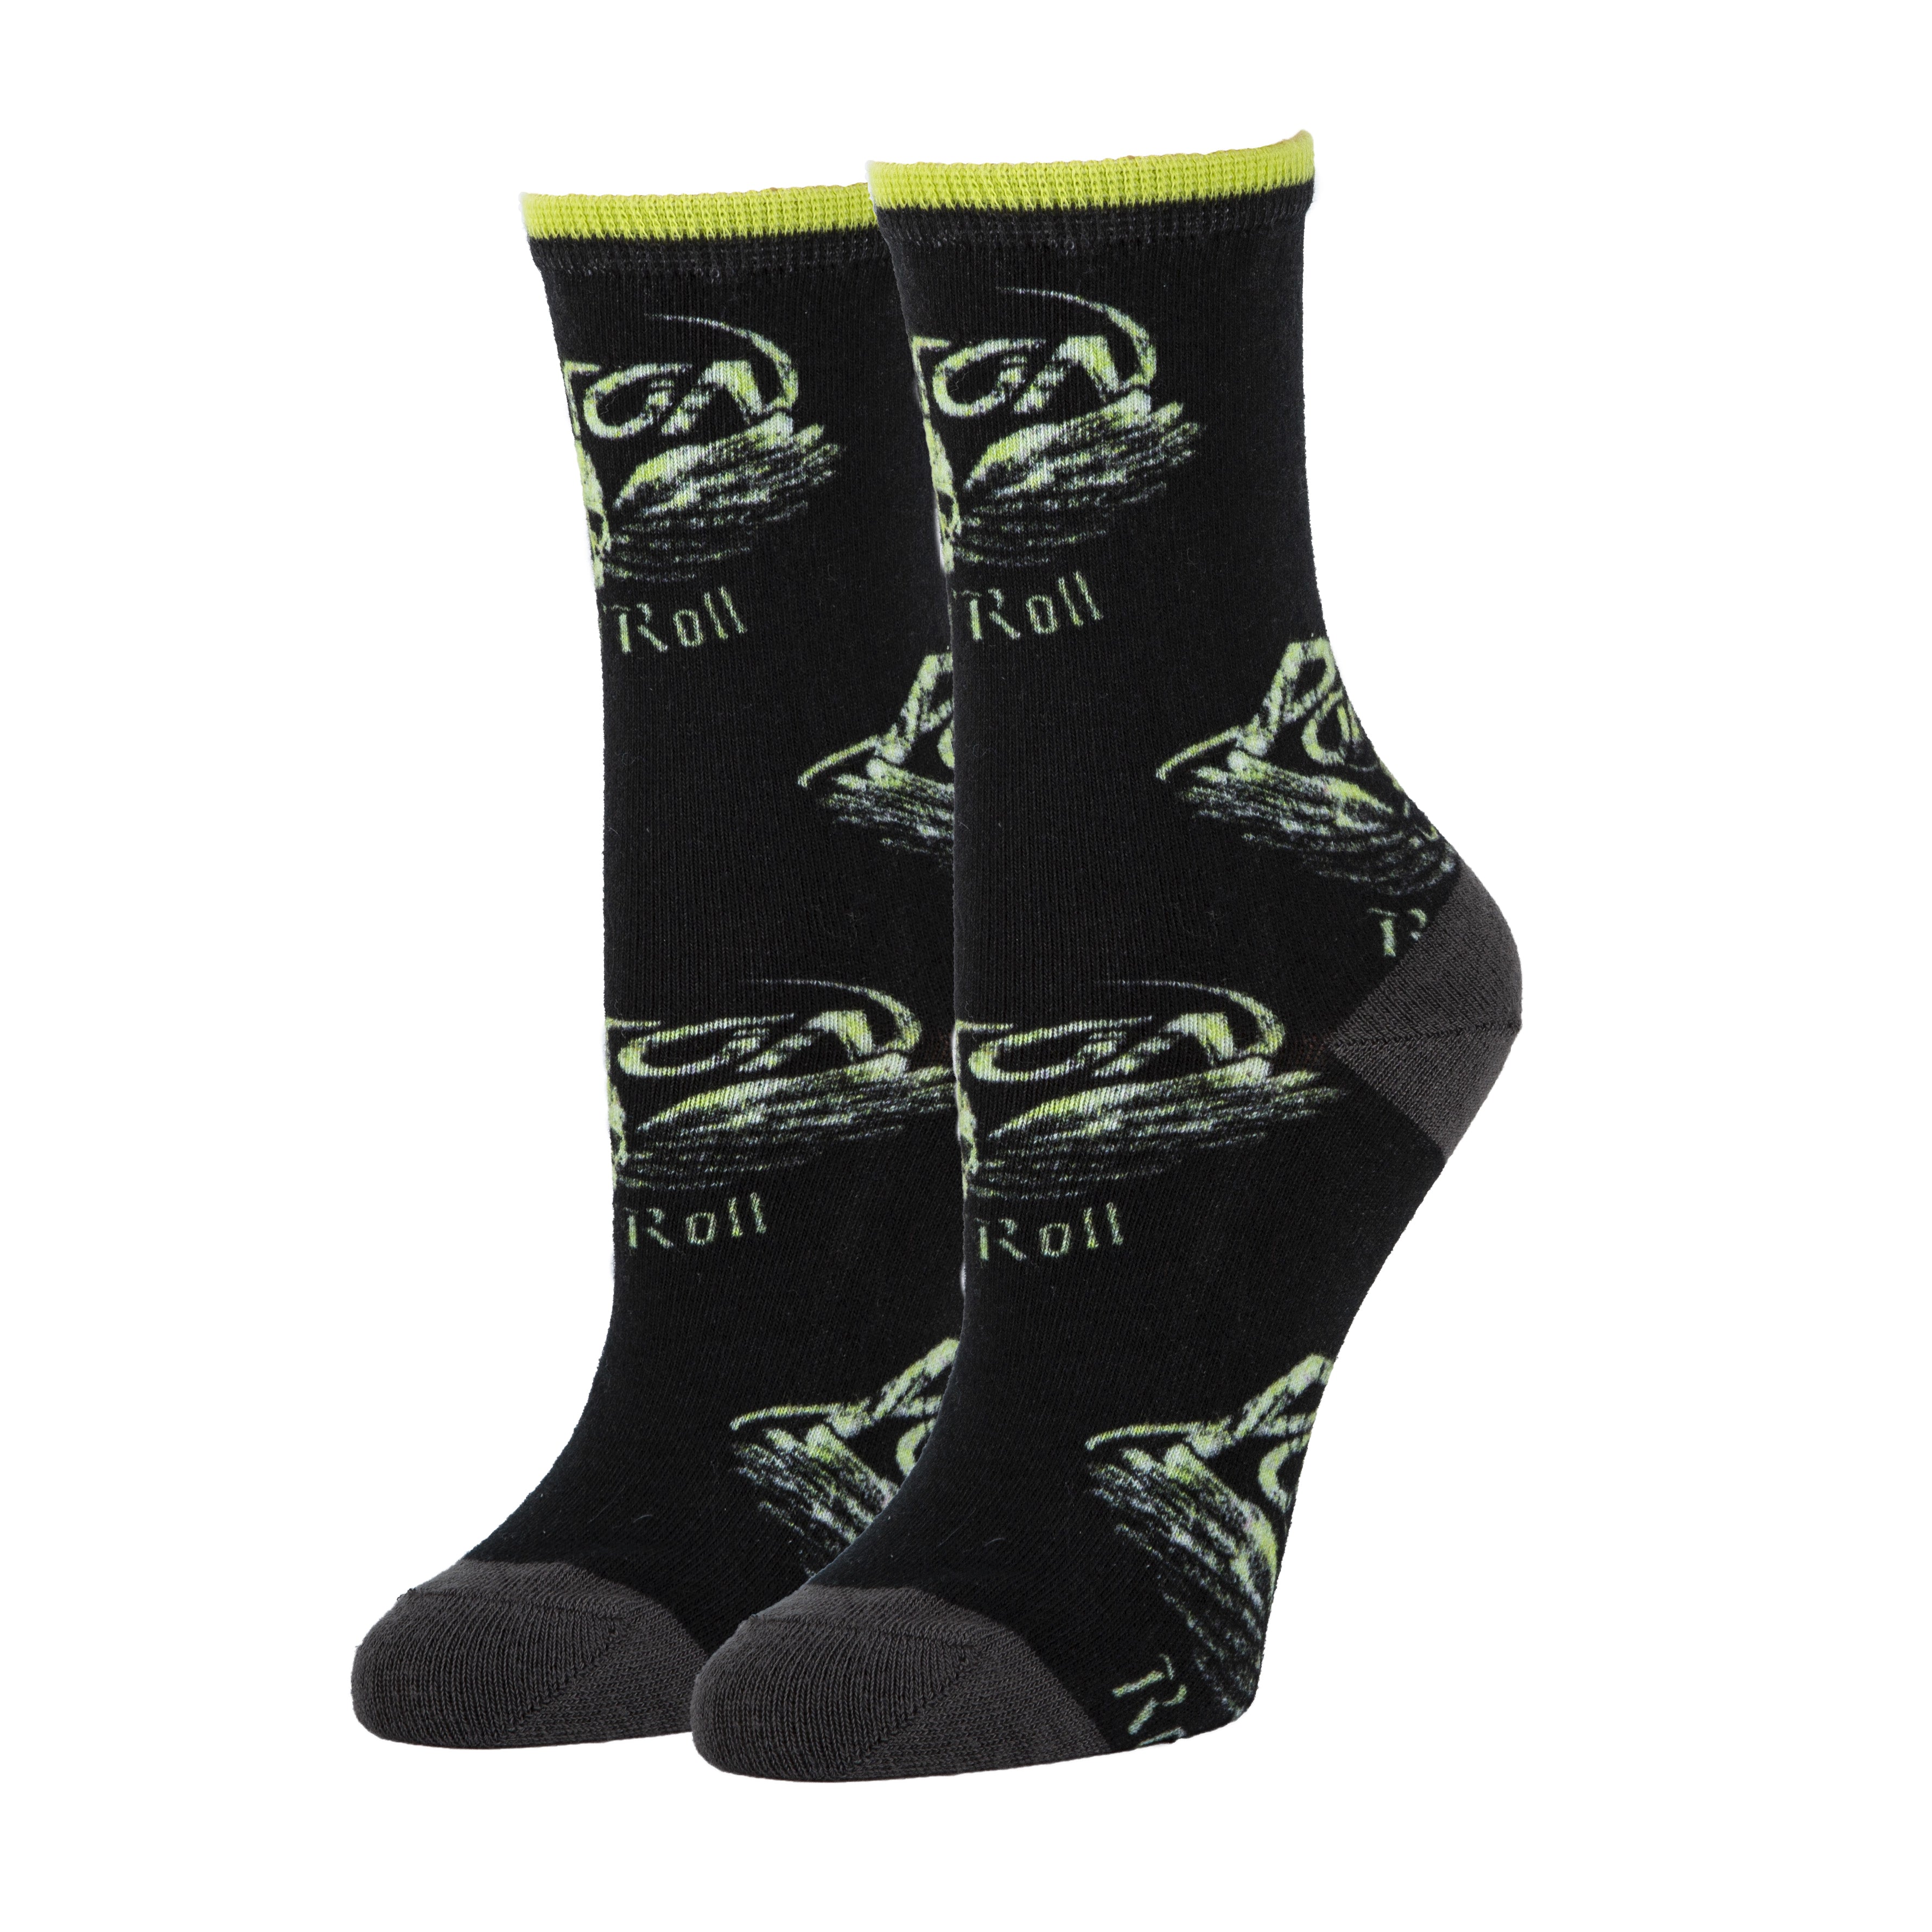 Rock n’ Roll Socks | Novelty Crew Socks For Women